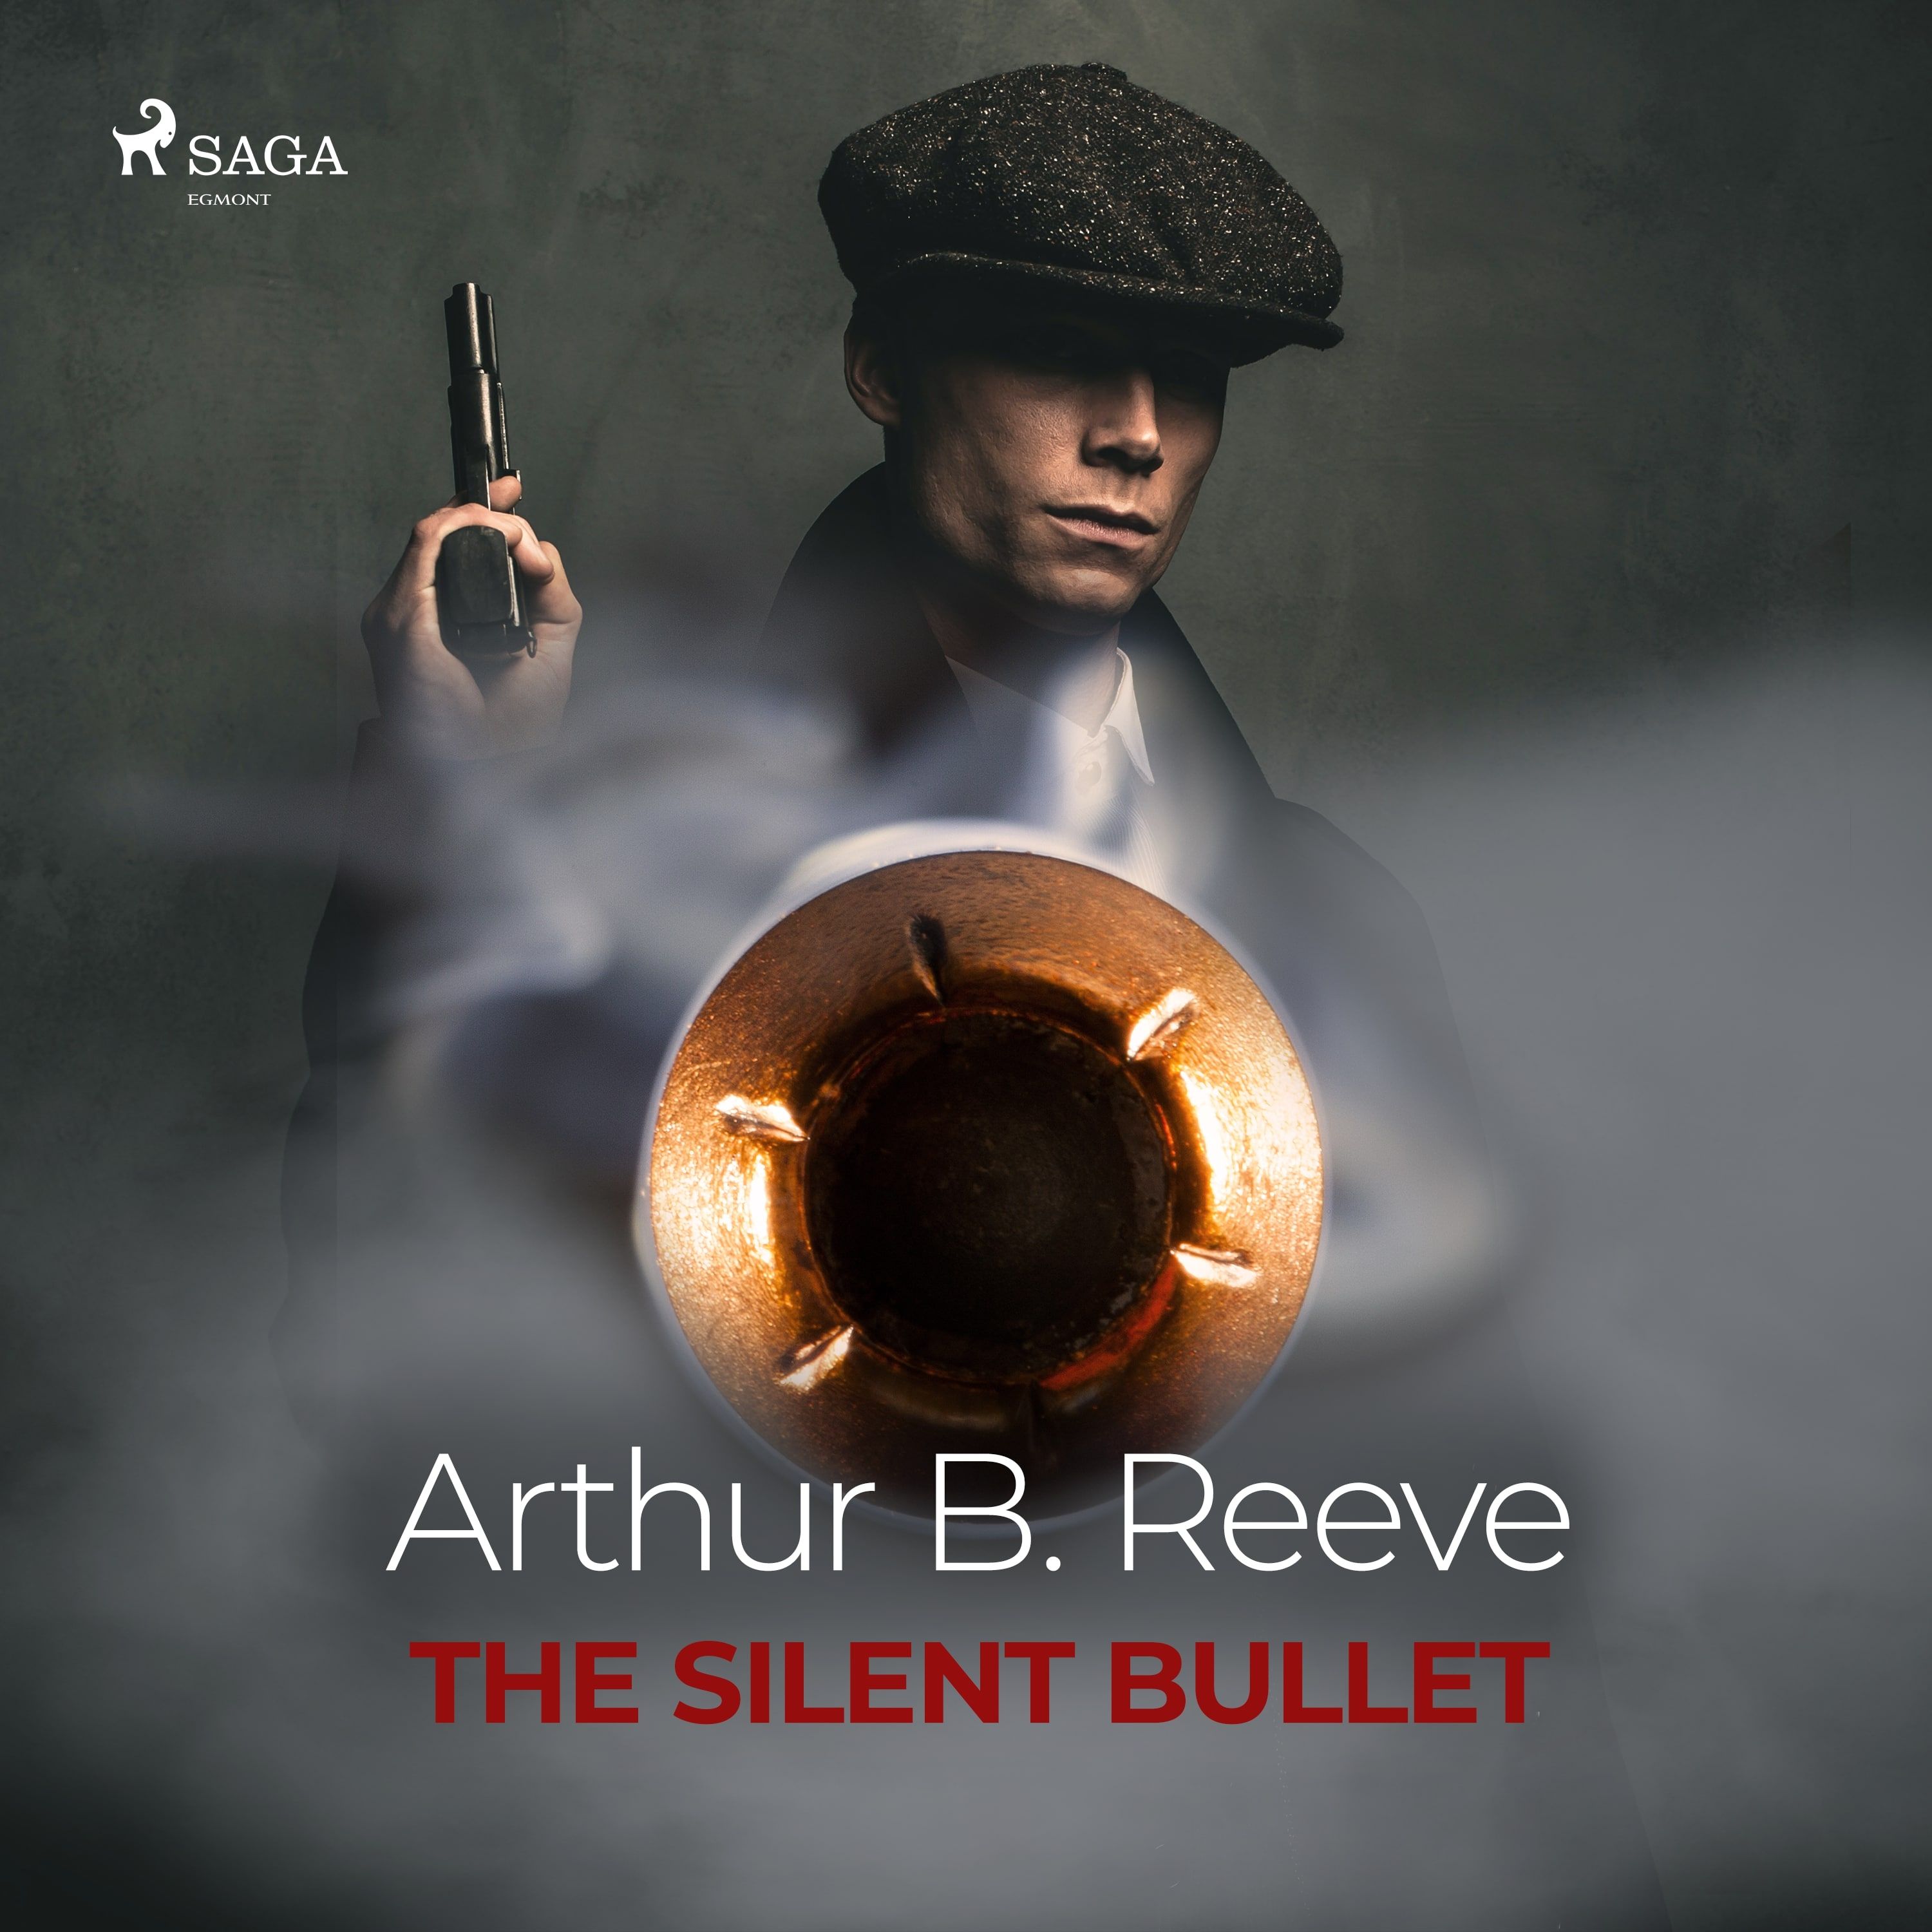 The Silent Bullet, ljudbok av Arthur B. Reeve